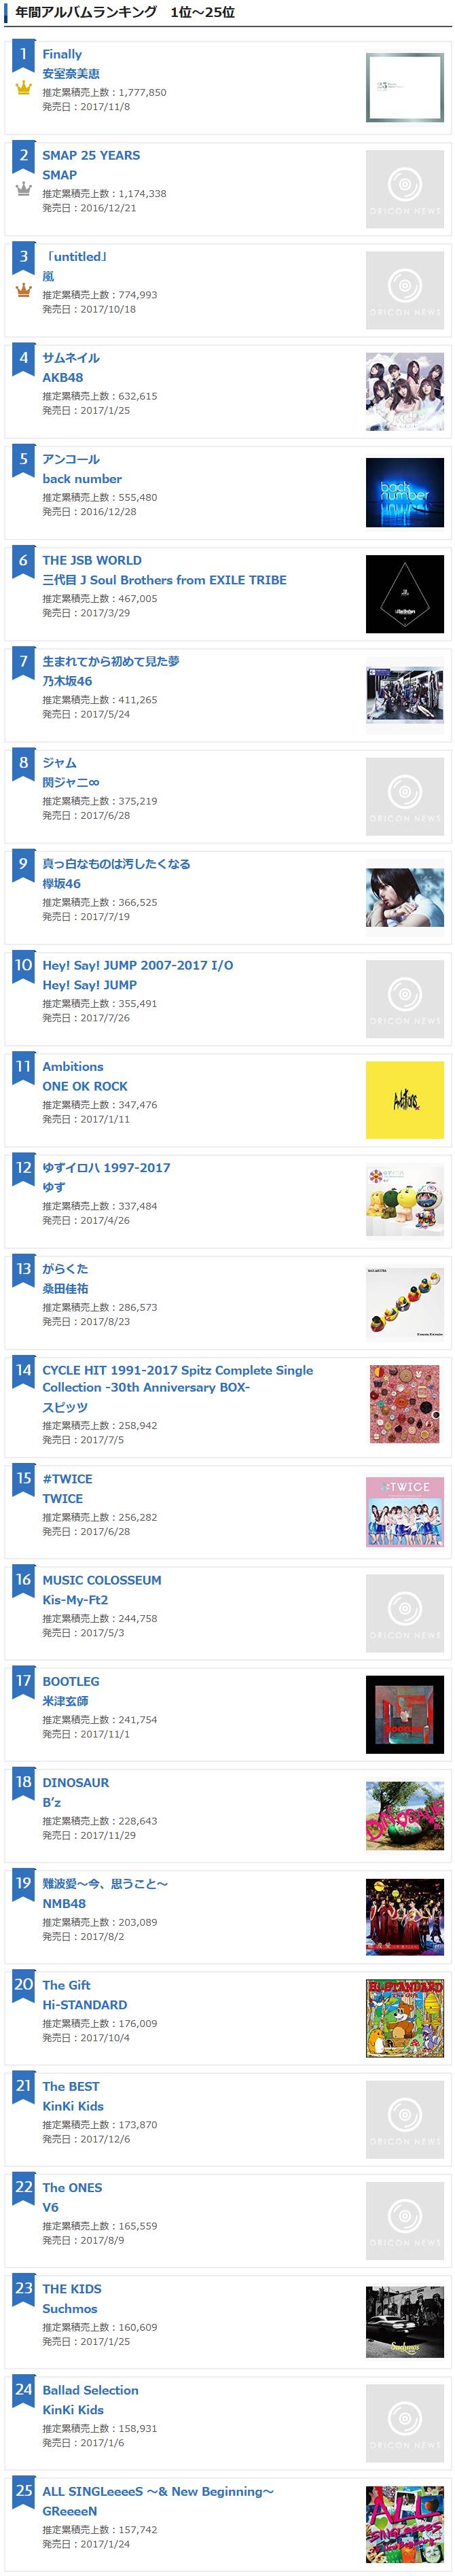 일본 오리콘 2017년 앨범,싱글 연간판매 TOP 25 | 인스티즈